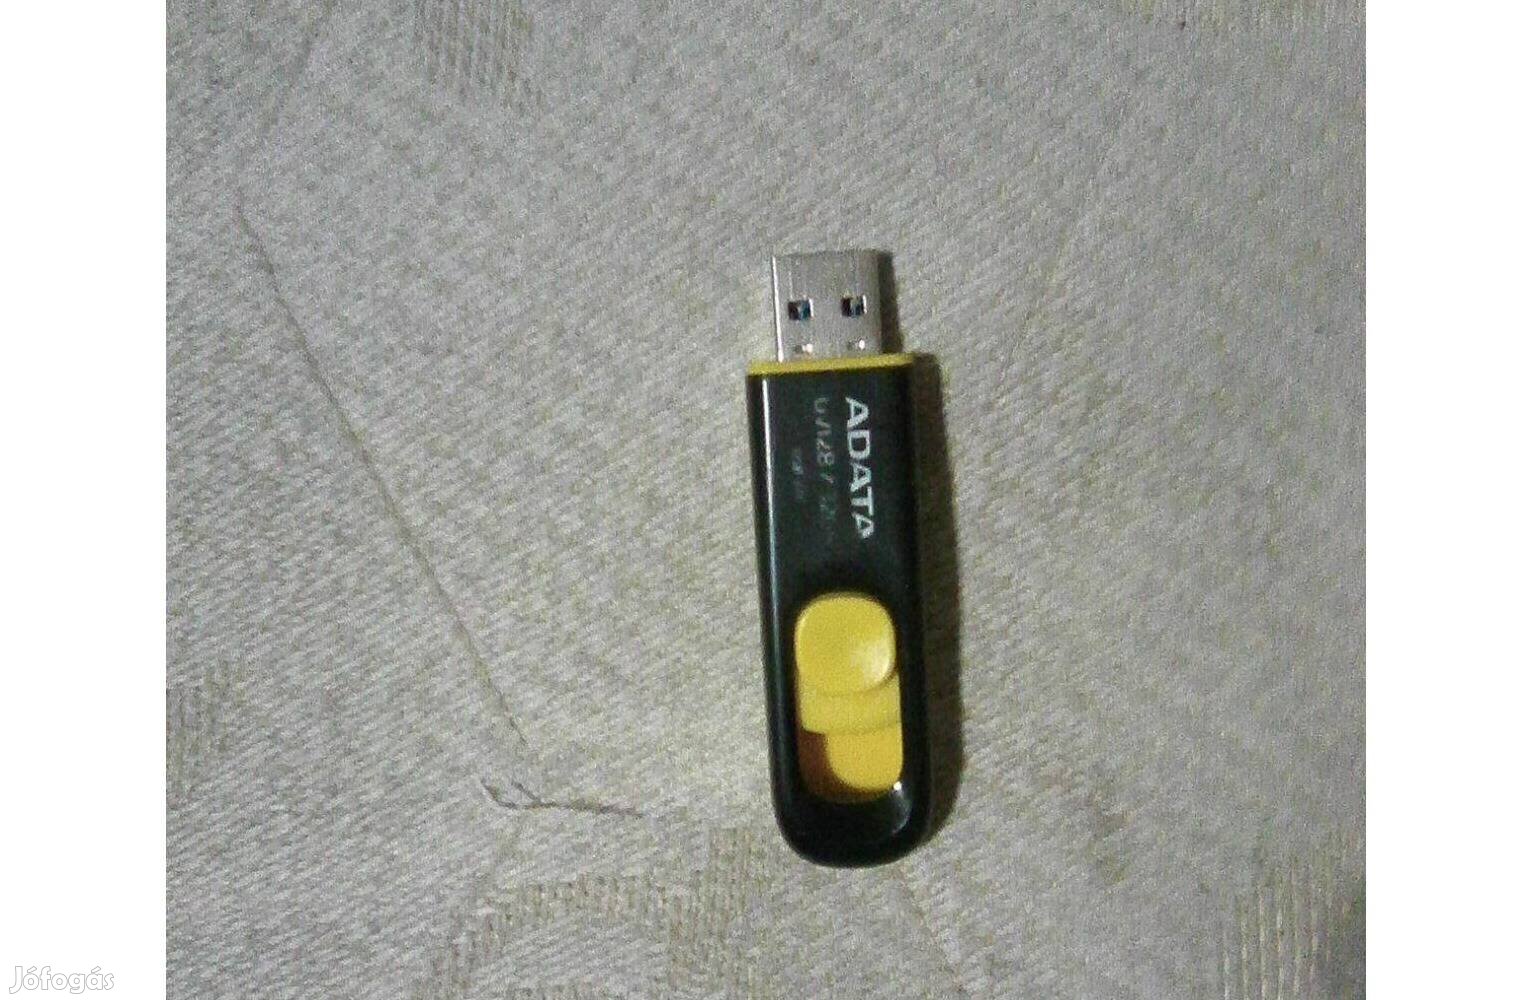 32 Gb-os USB 3.0 Adata pendrive használtan, de üzemképesen